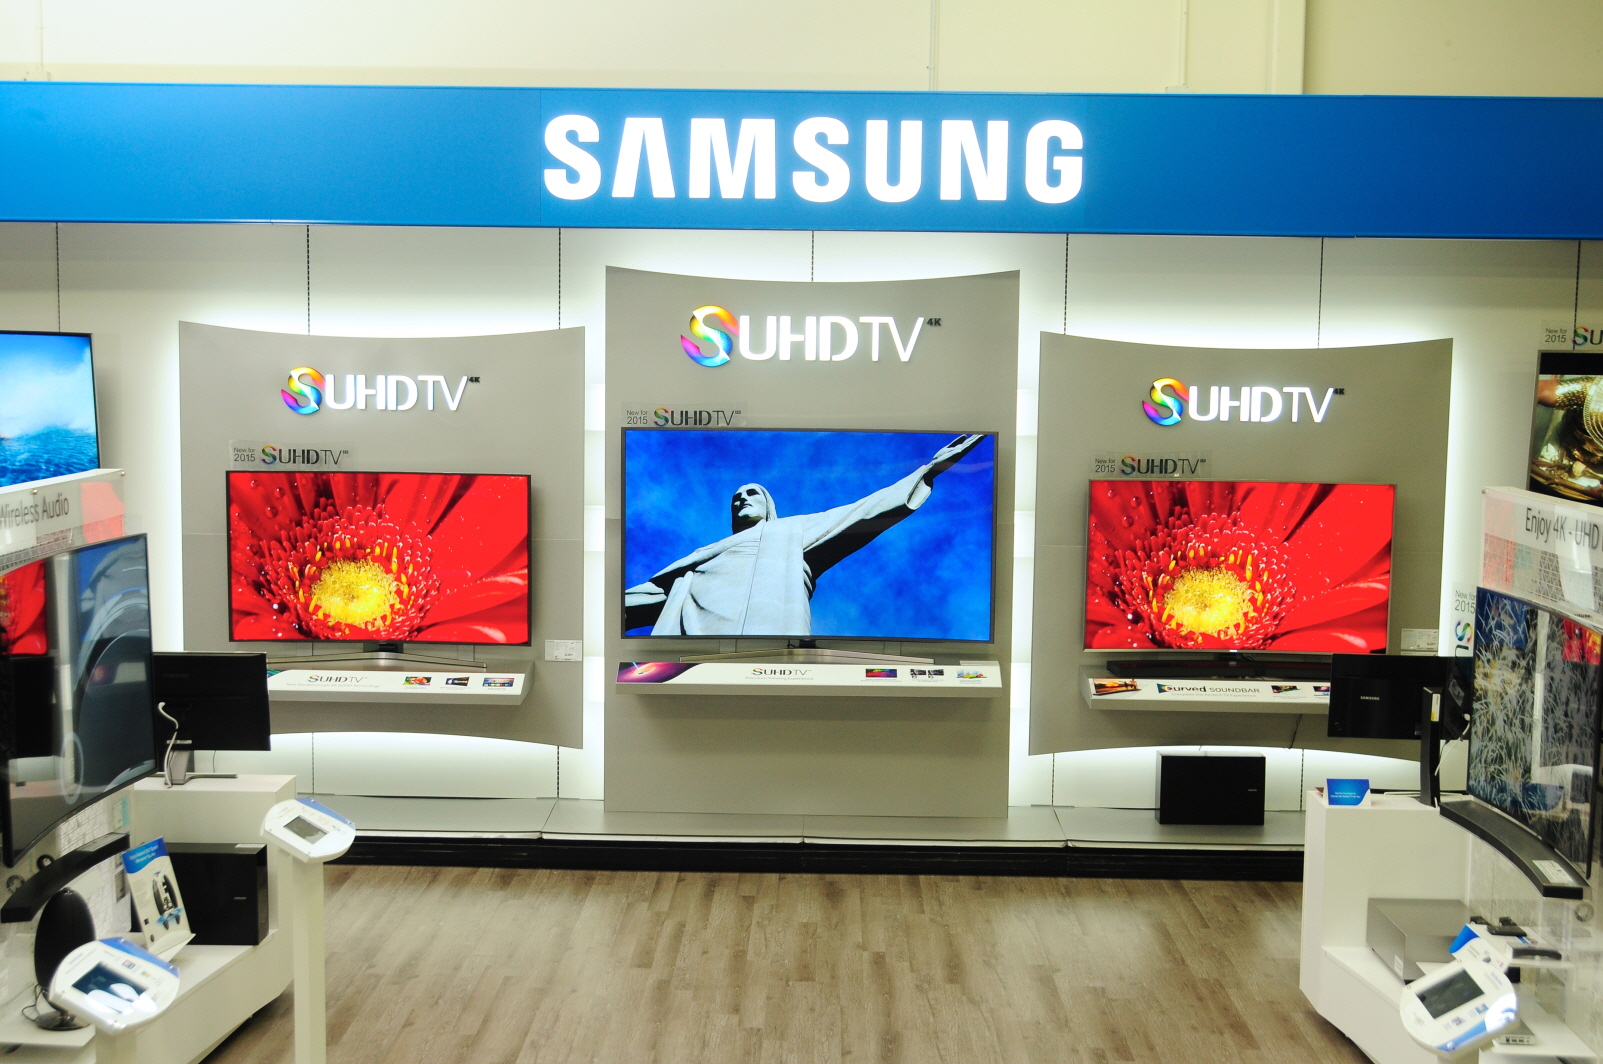 Поддержка самсунг телевизоров. Samsung Store телевизор. Операционной системой Tizen. Реклама по телевизору.